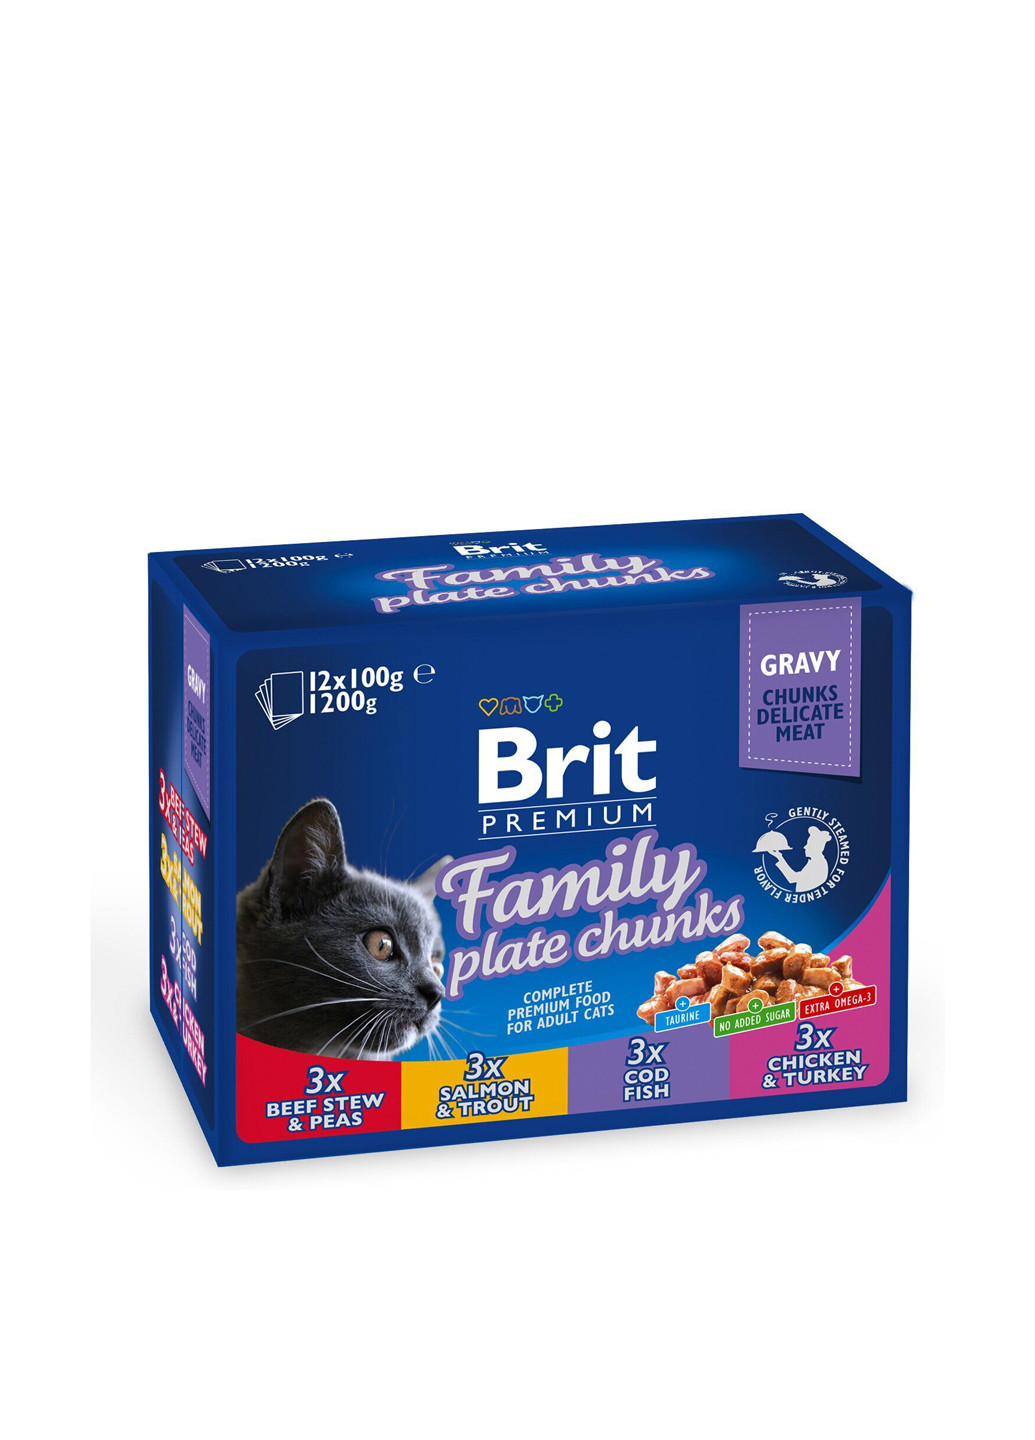 Мясные консервы «Семейная тарелка» (12 шт.), 1200 г Brit Premium (201658359)